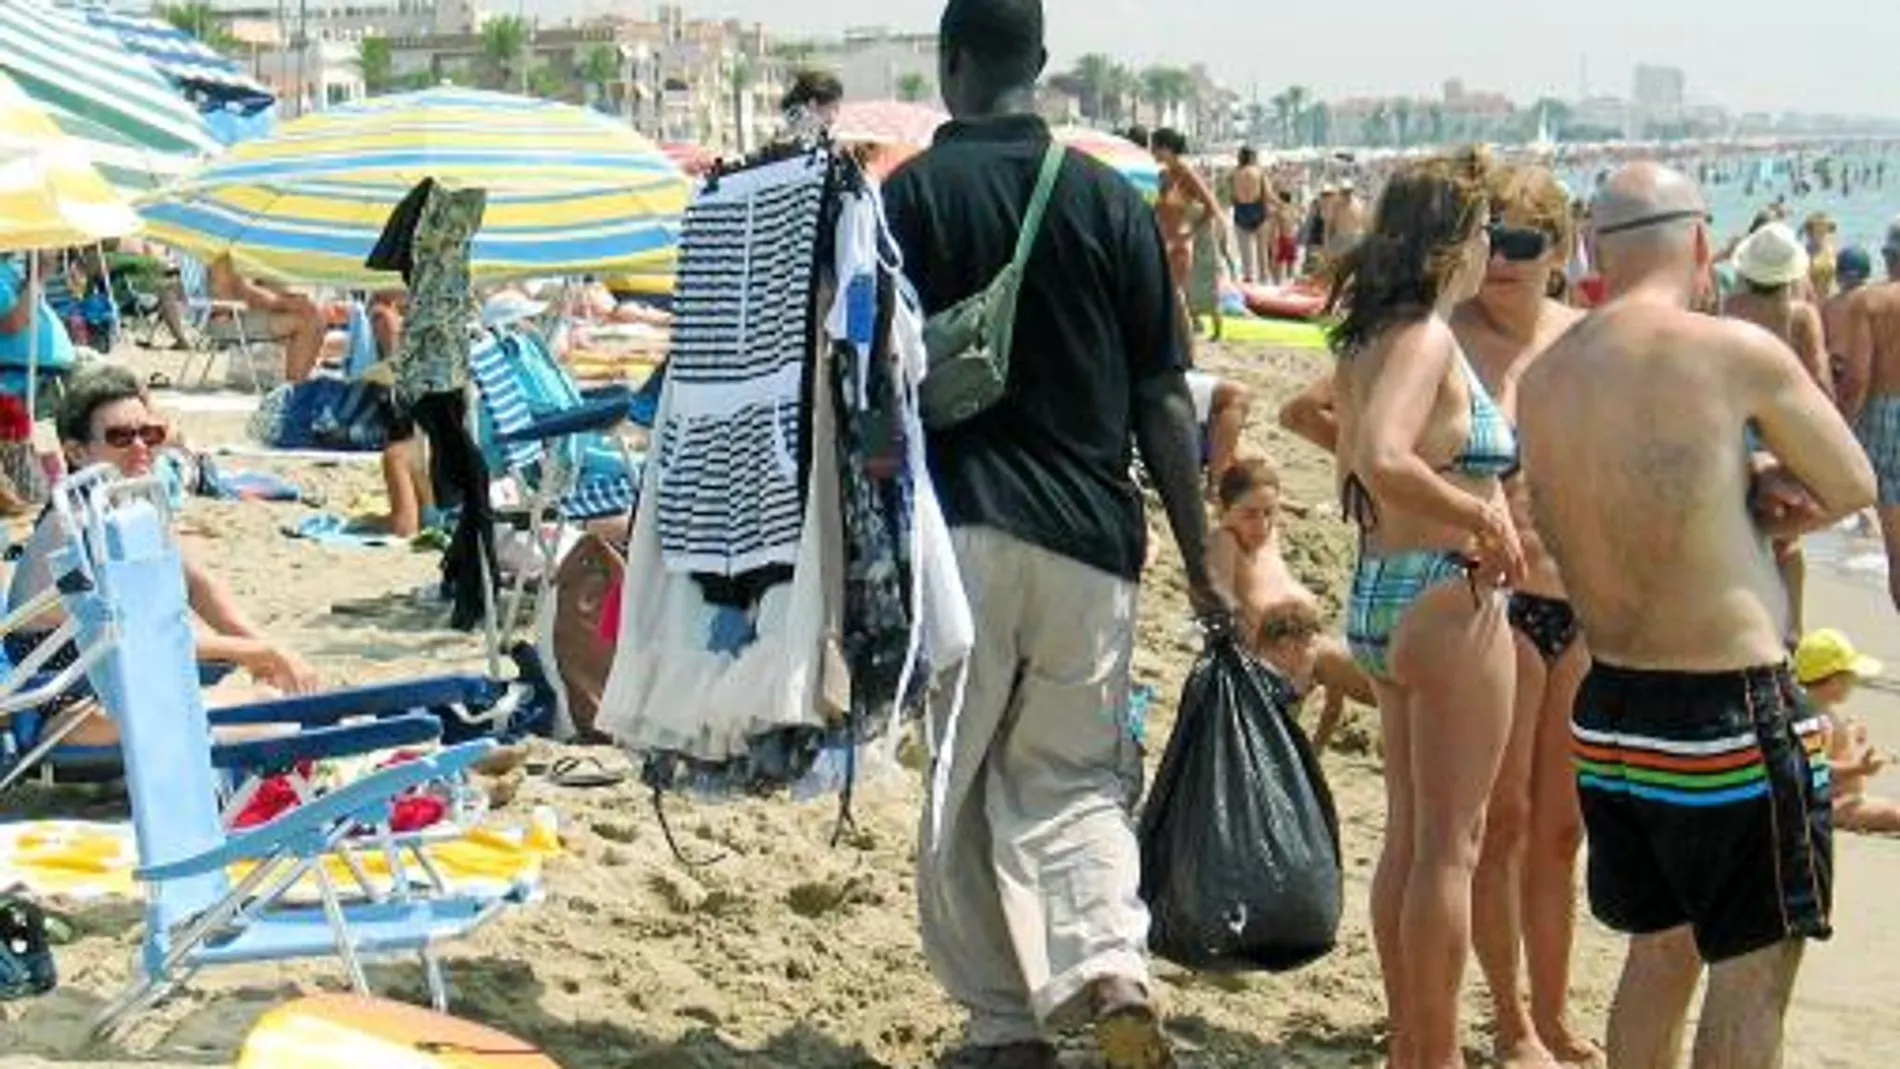 En la imagen, un joven mantero intenta vender todo tipo de productos a los usuarios de una playa de Calafell, durante este verano, lejos de las áreas para el top manta